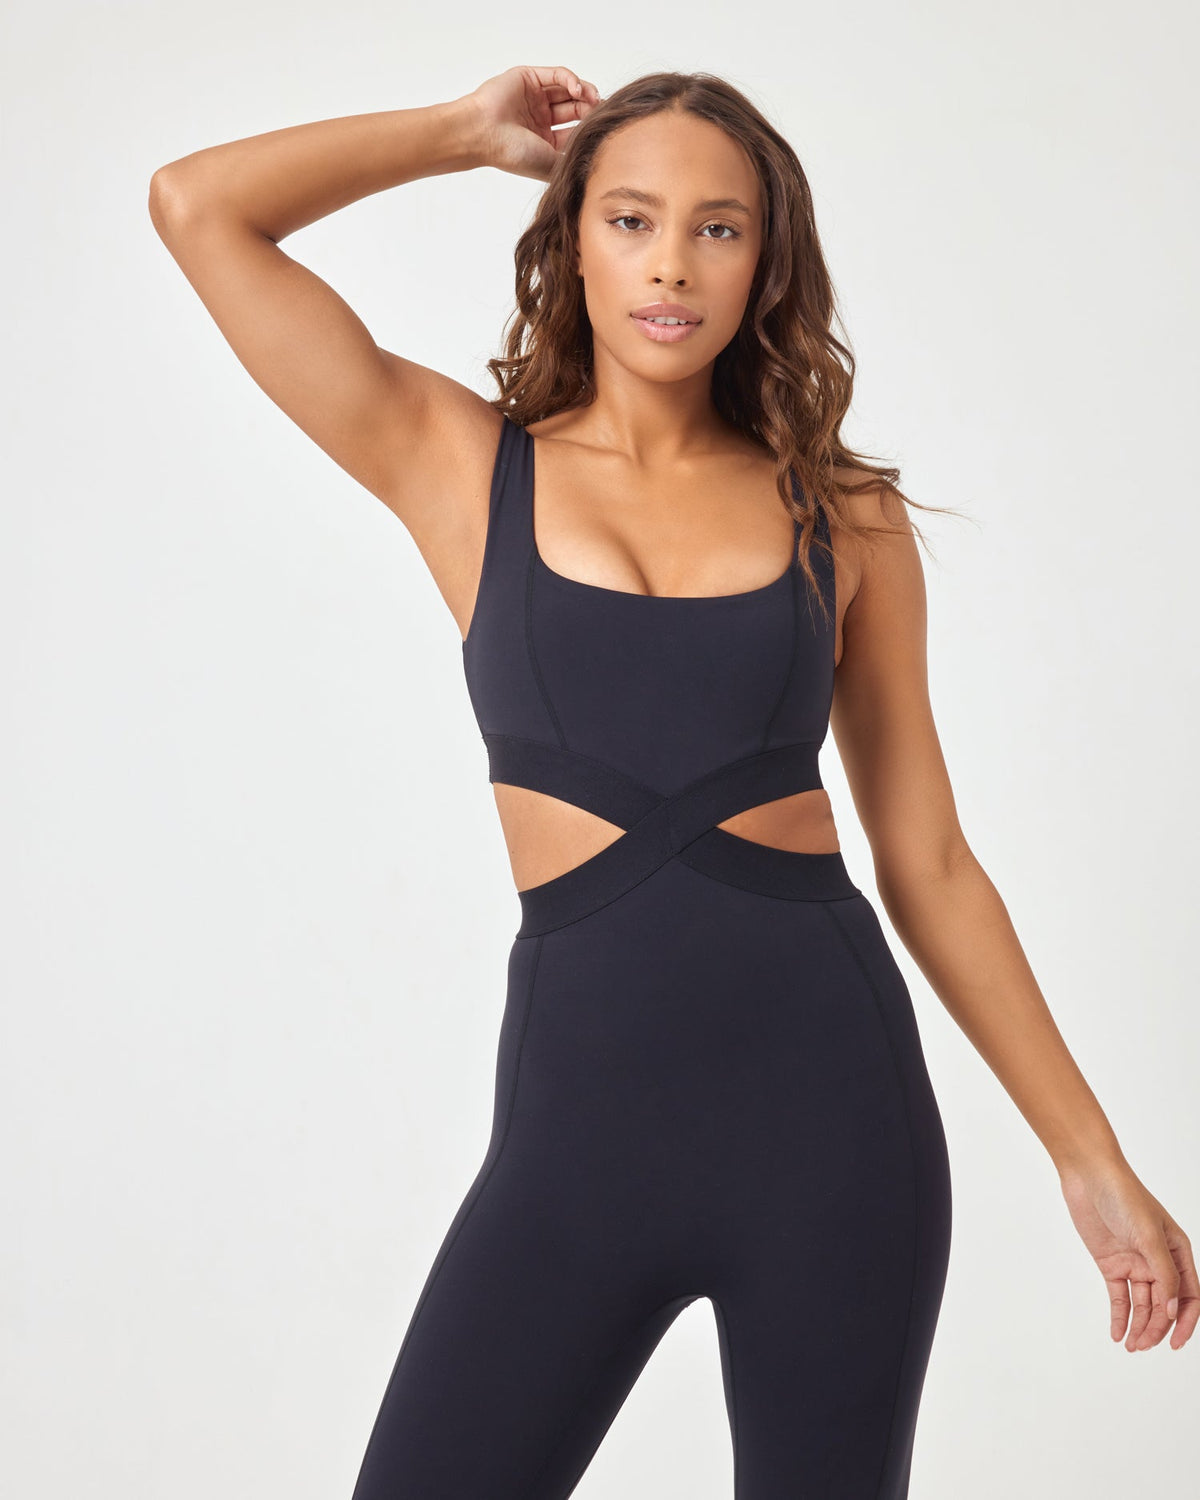 Recreation Jumpsuit Black | Model: Natalie (size: S)